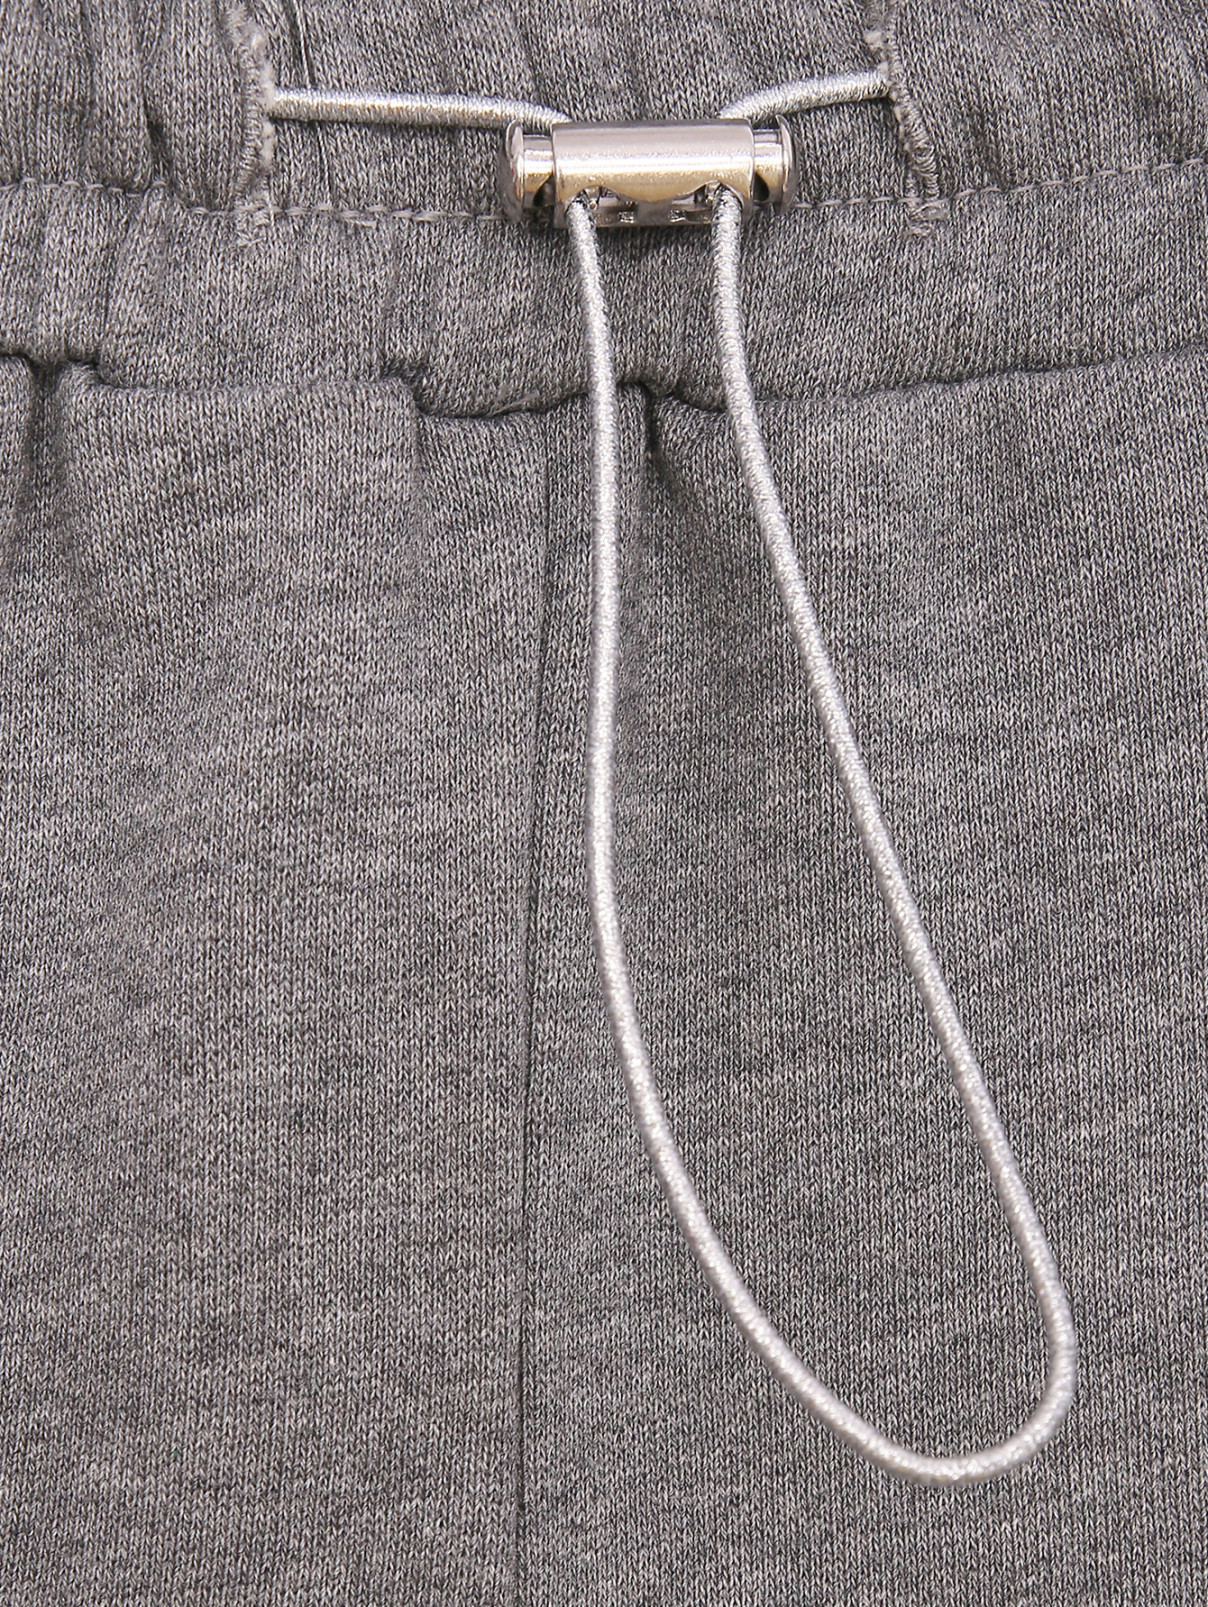 Трикотажные брюки из хлопка на резинке Persona by Marina Rinaldi  –  Деталь  – Цвет:  Серый